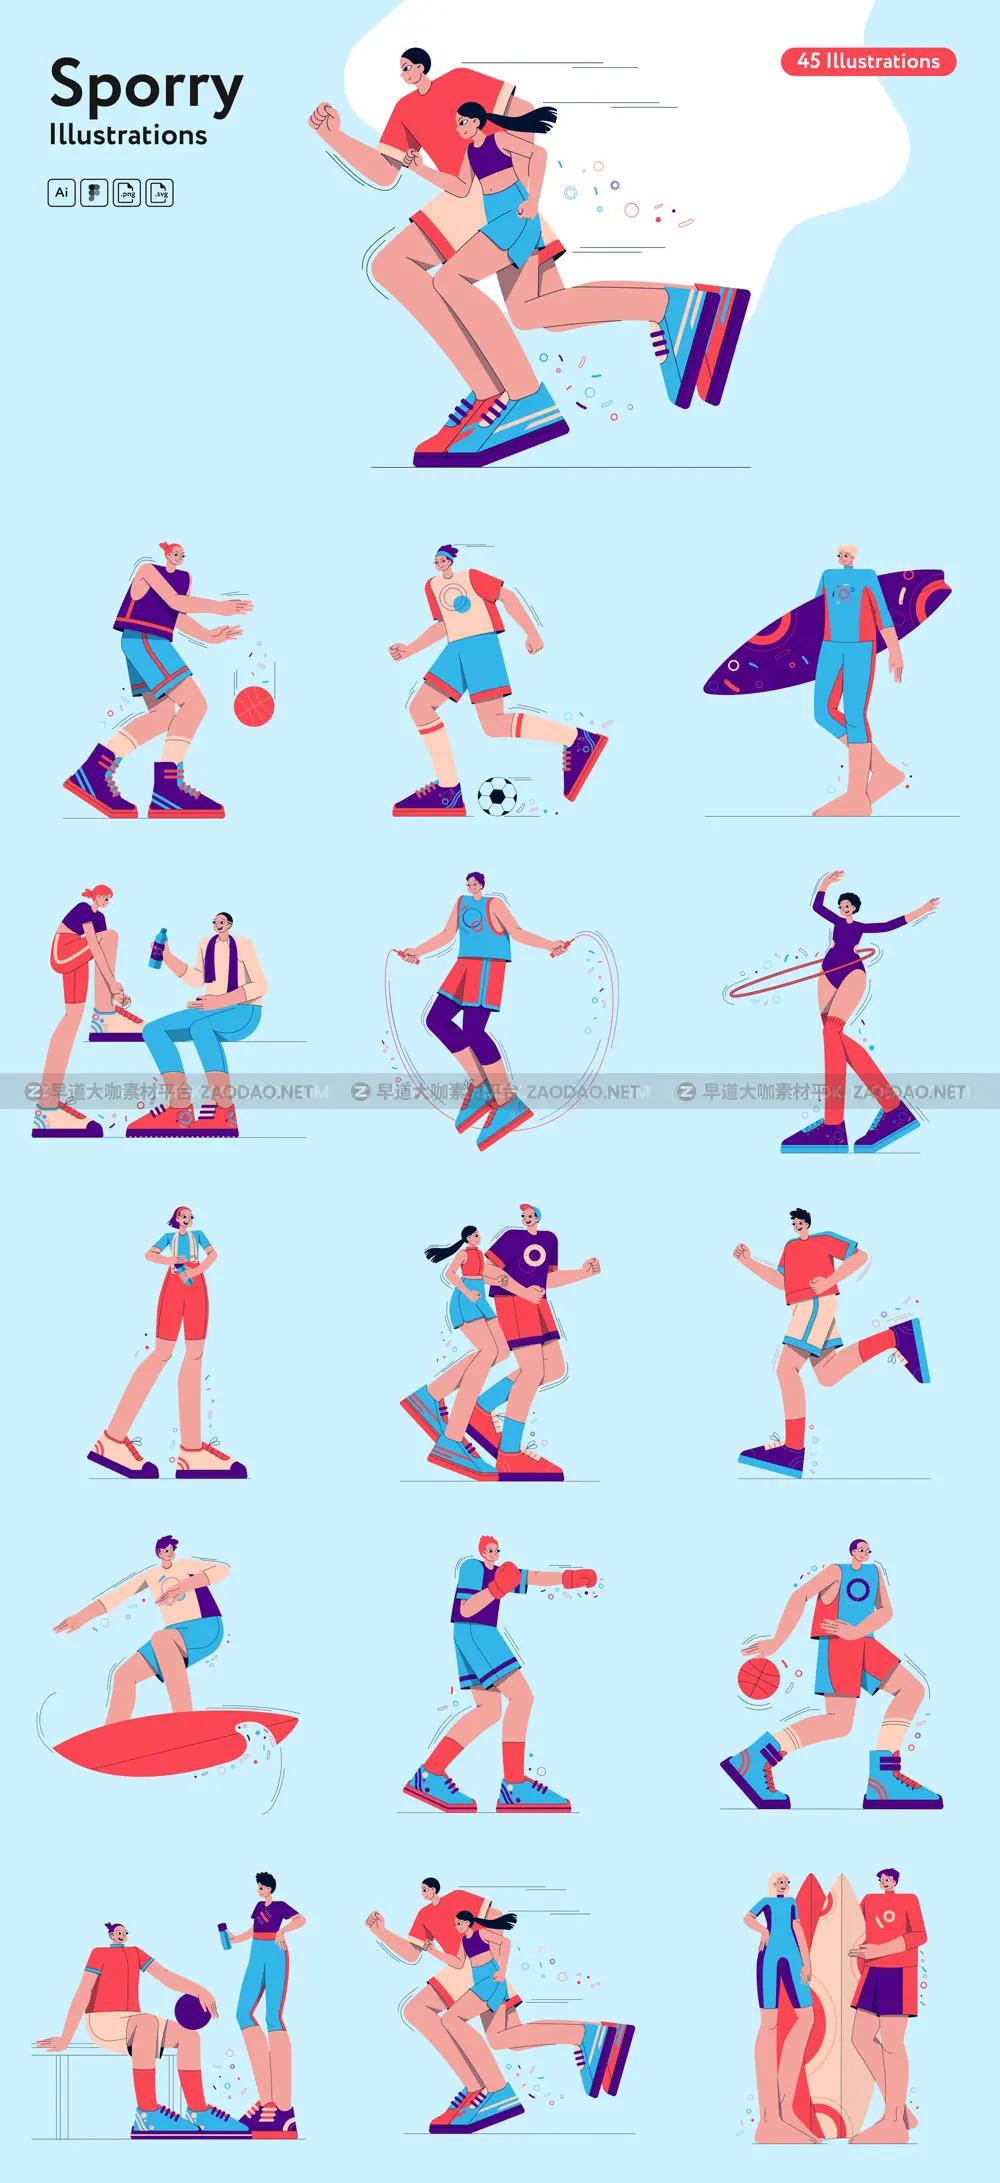 45幅精美运动健身生活方式人物角色矢量插图设计素材 Sporry Illustrations插图6